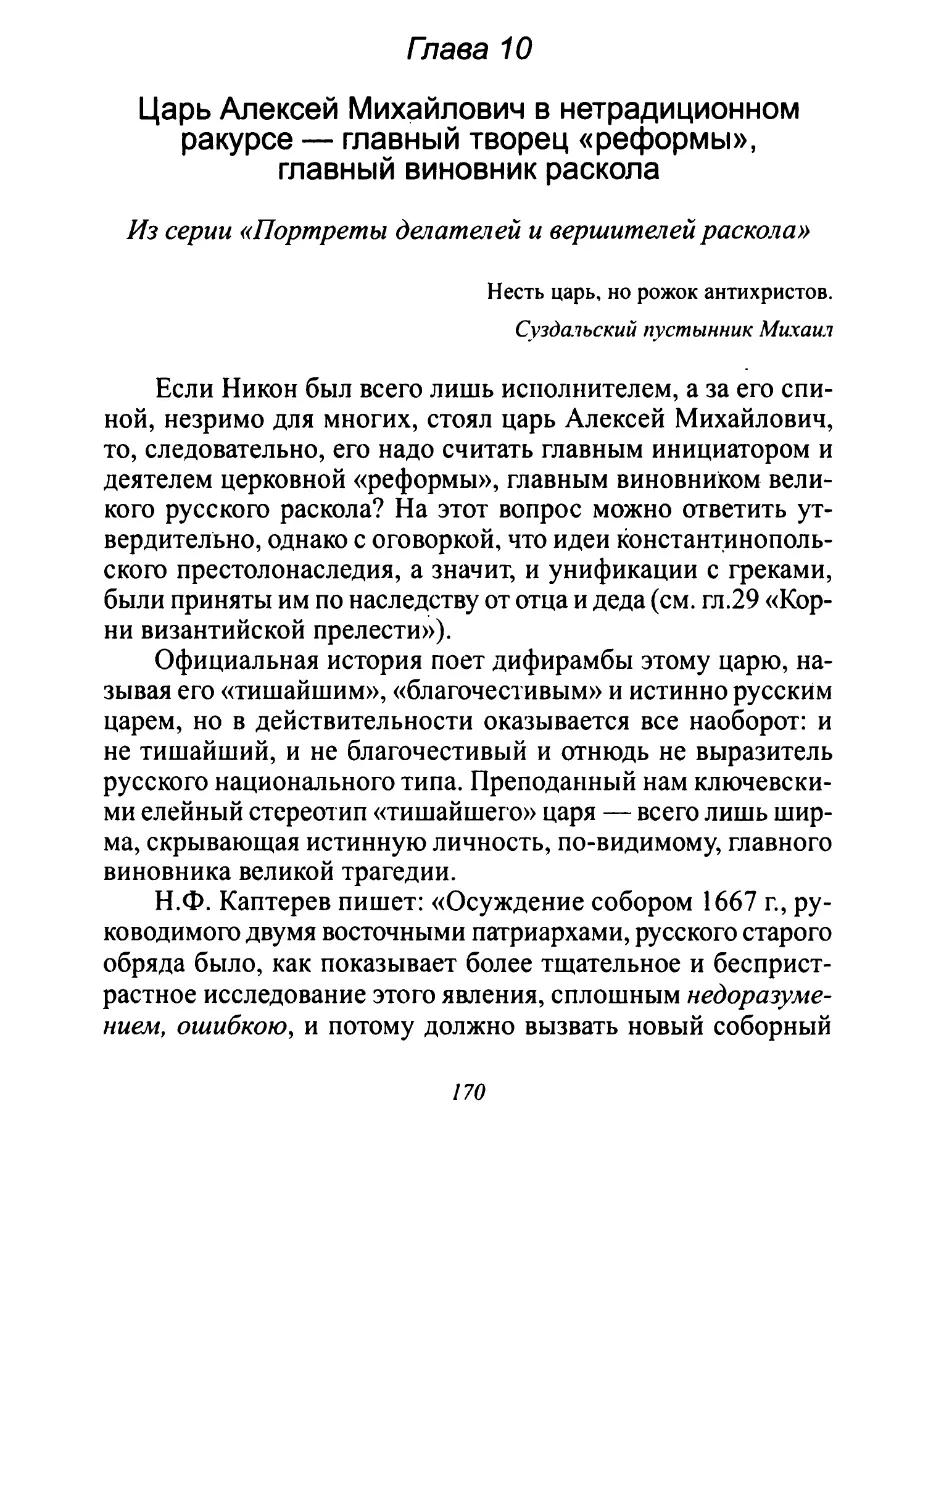 Глава 10. Царь Алексей Михайлович в нетрадиционном ракурсе